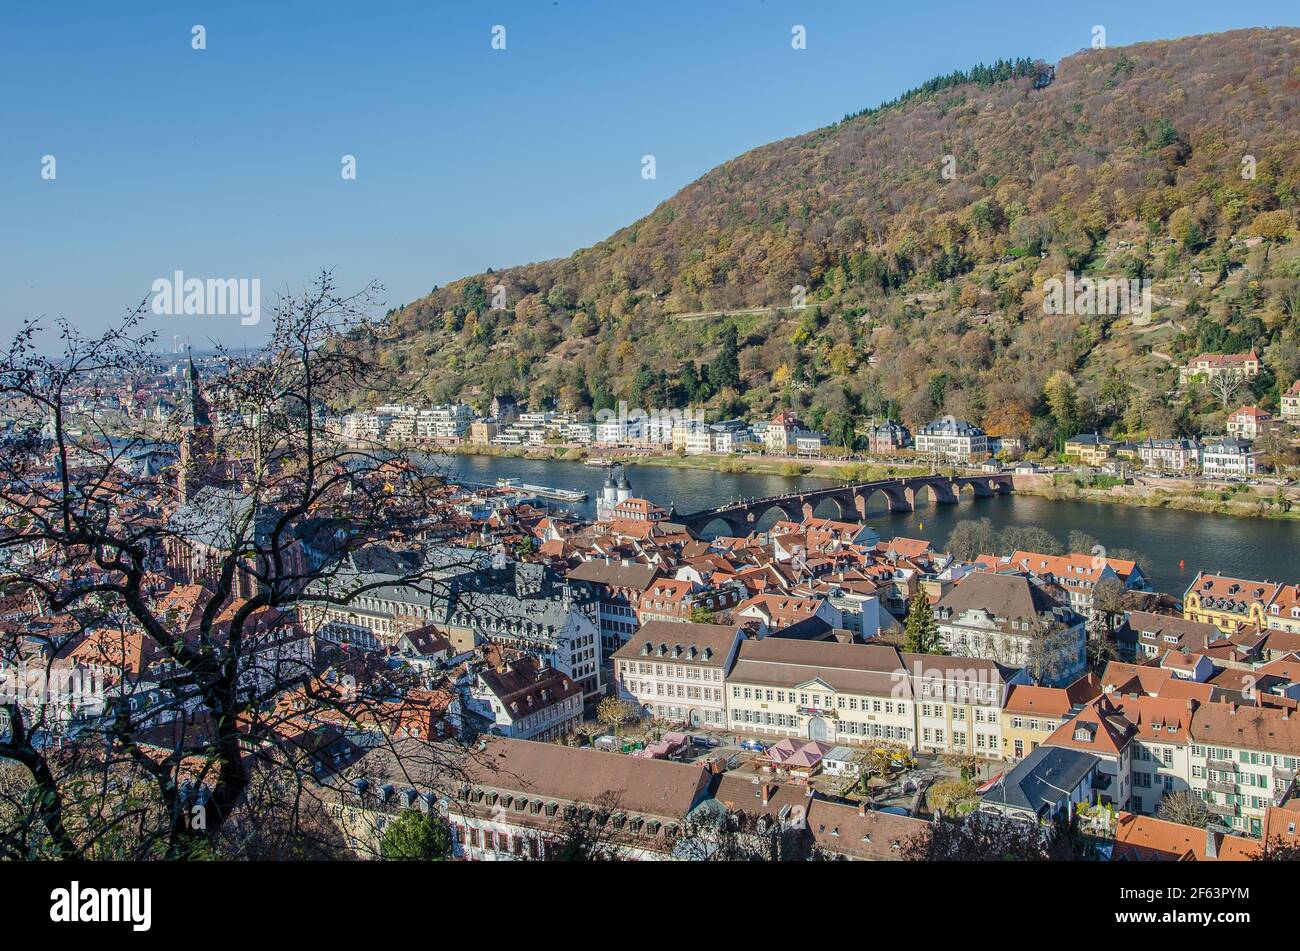 Heidelberg è una città universitaria dello stato tedesco del Baden-Württemberg, situata sul fiume Neckar, nella Germania sud-occidentale. Foto Stock